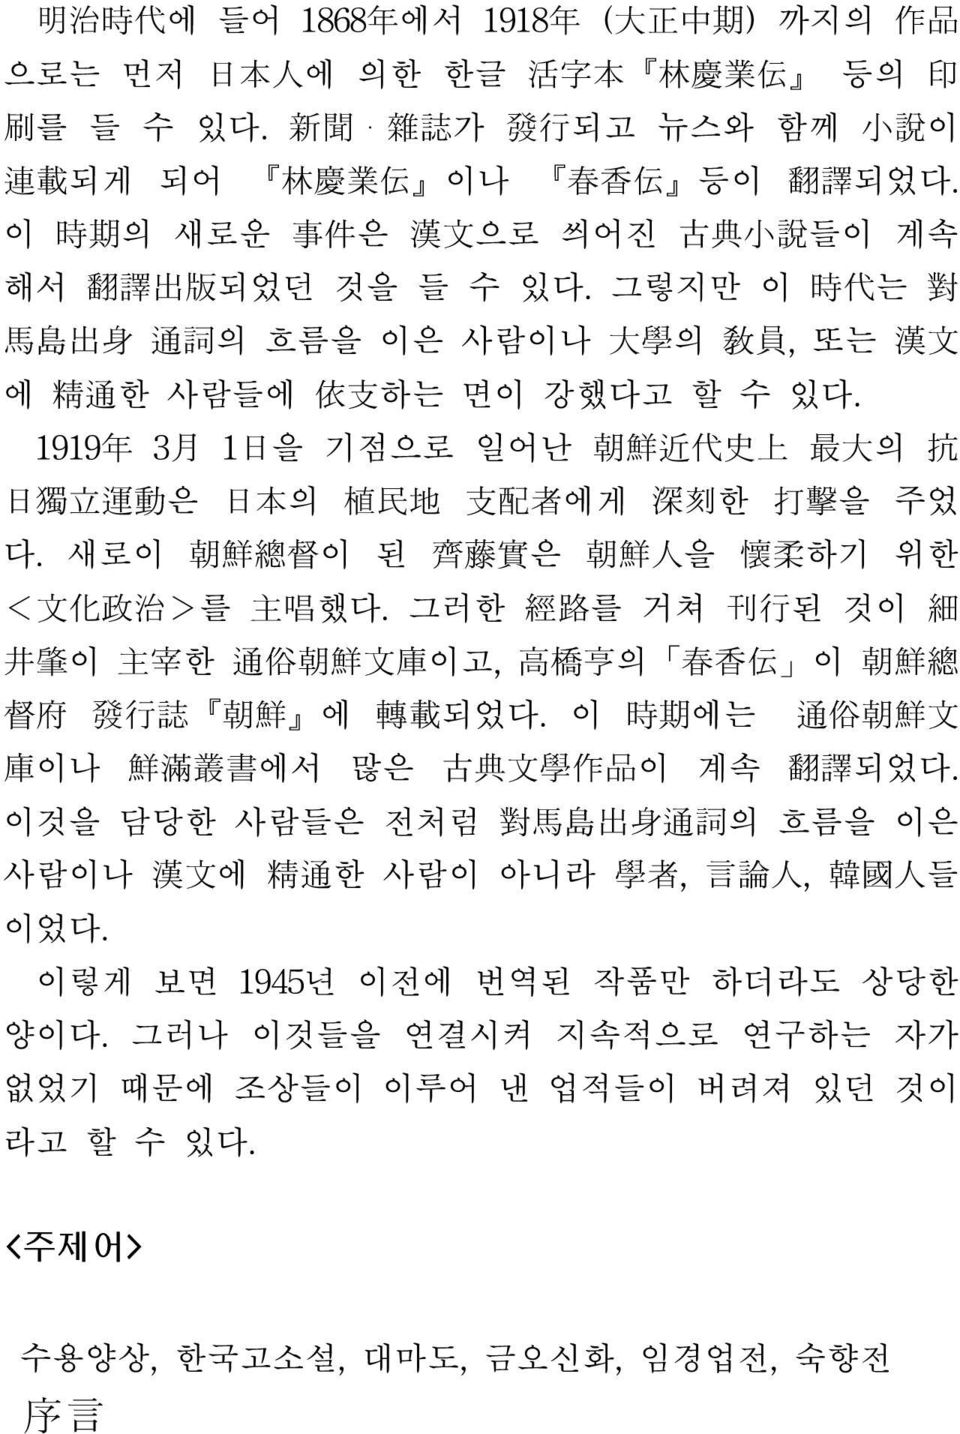 1919 年 3 月 1 日 을 기점으로 일어난 朝 鮮 近 代 史 上 最 大 의 抗 日 独 立 運 動 은 日 本 의 植 民 地 支 配 者 에게 深 刻 한 打 撃 을 주었 다. 새로이 朝 鮮 総 督 이 된 齊 藤 実 은 朝 鮮 人 을 懐 柔 하기 위한 < 文 化 政 治 >를 主 唱 했다.